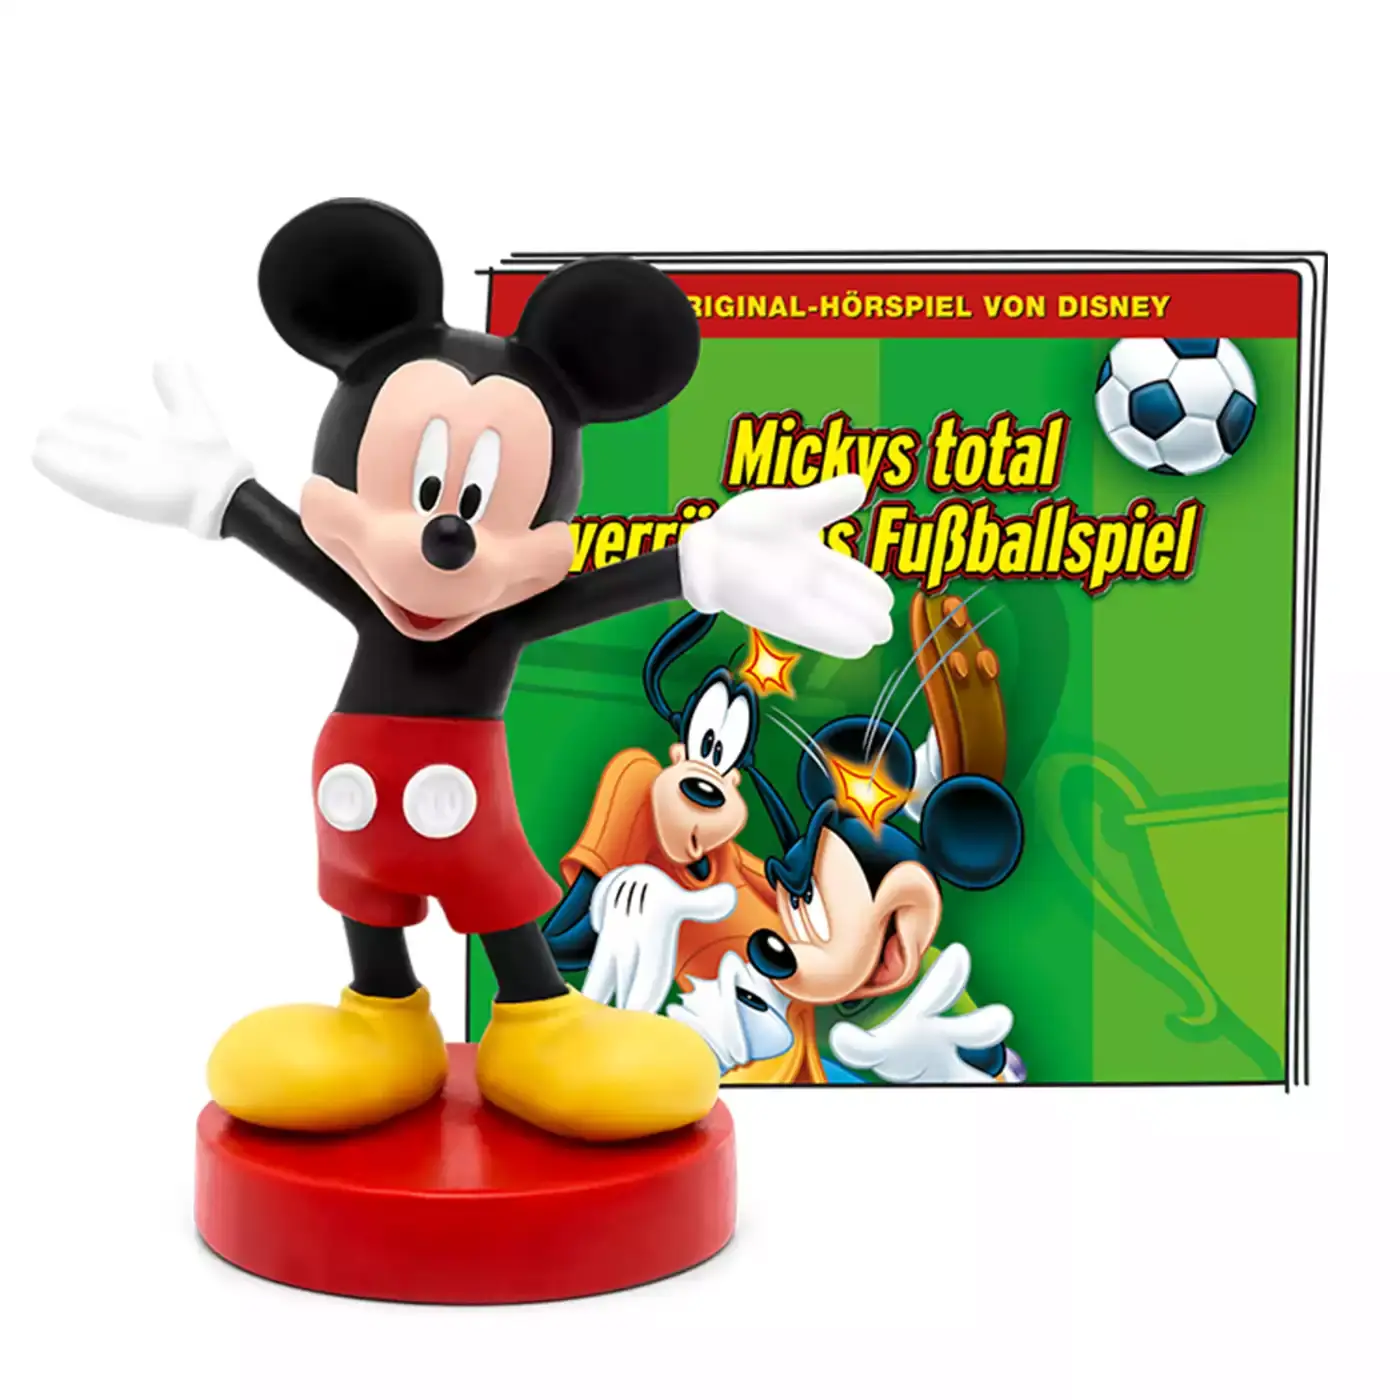 Disney - Mickys total verrücktes Fußballspiel tonies Schwarz 2000581064307 3